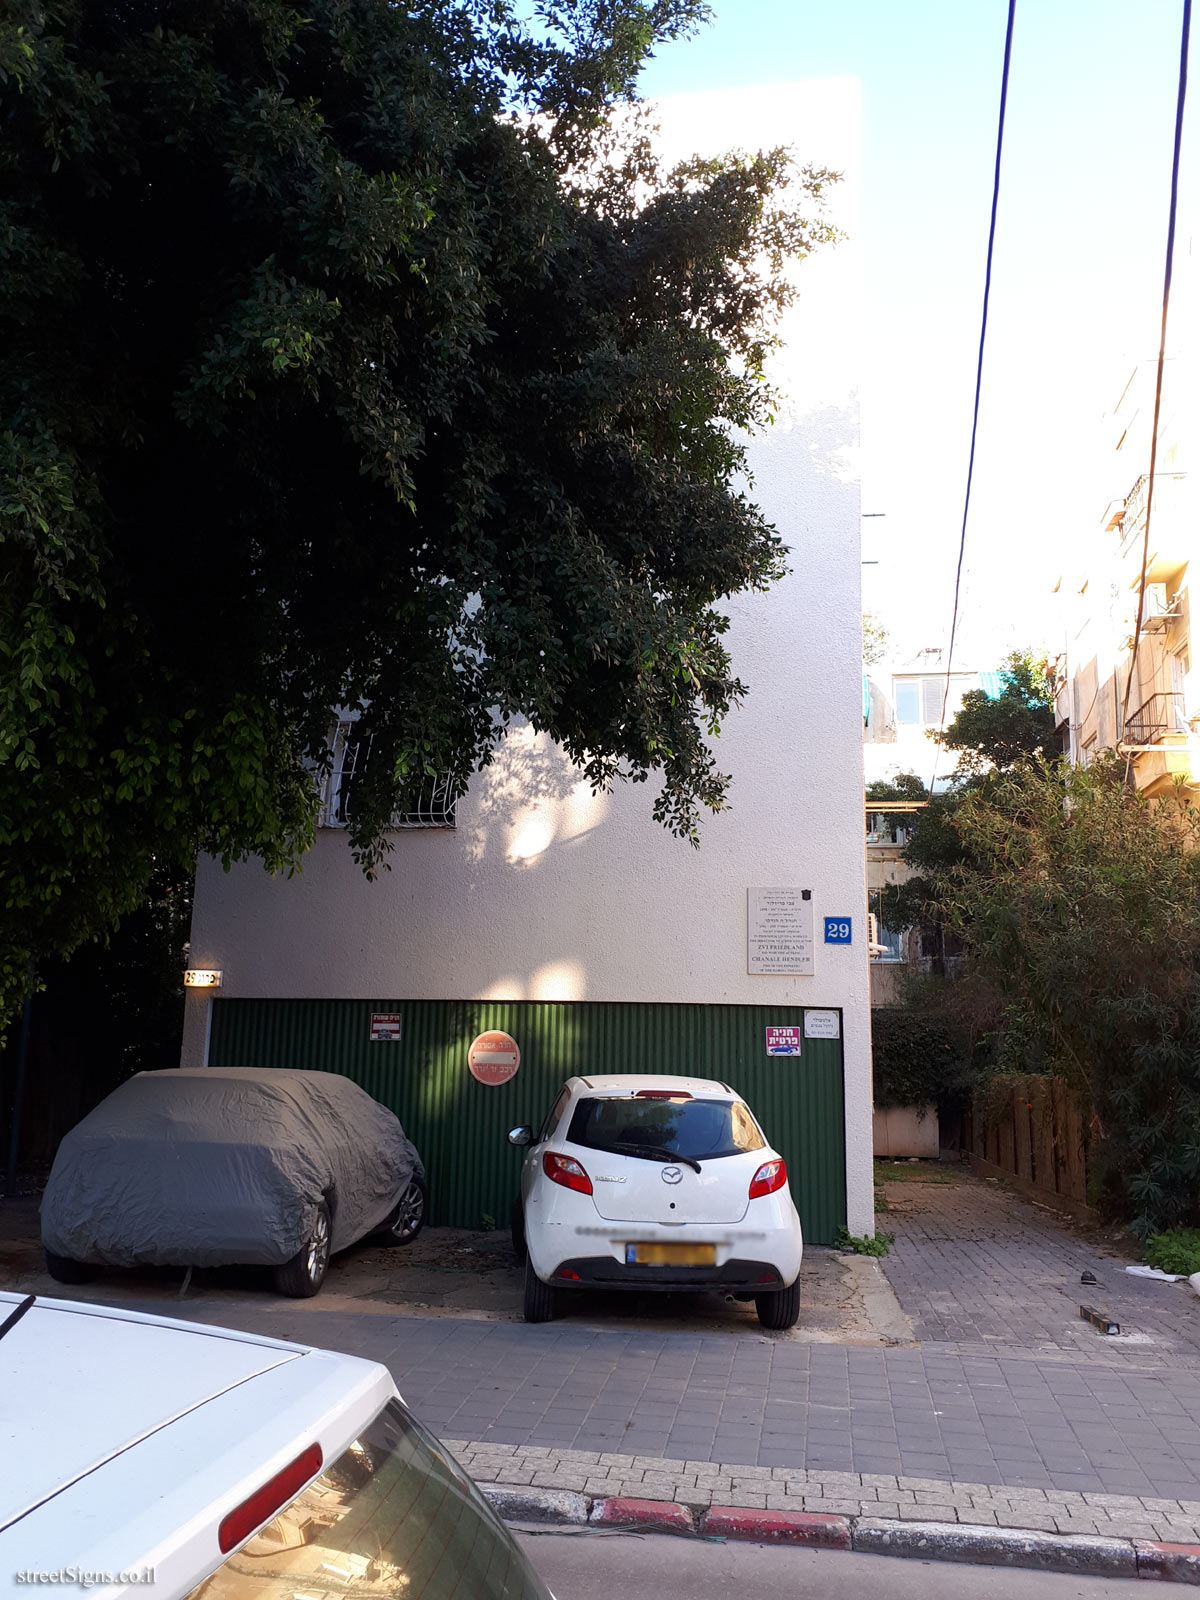 The house of Zvi Friedland & Chanale Hendler - Frug St 29, Tel Aviv-Yafo, Israel